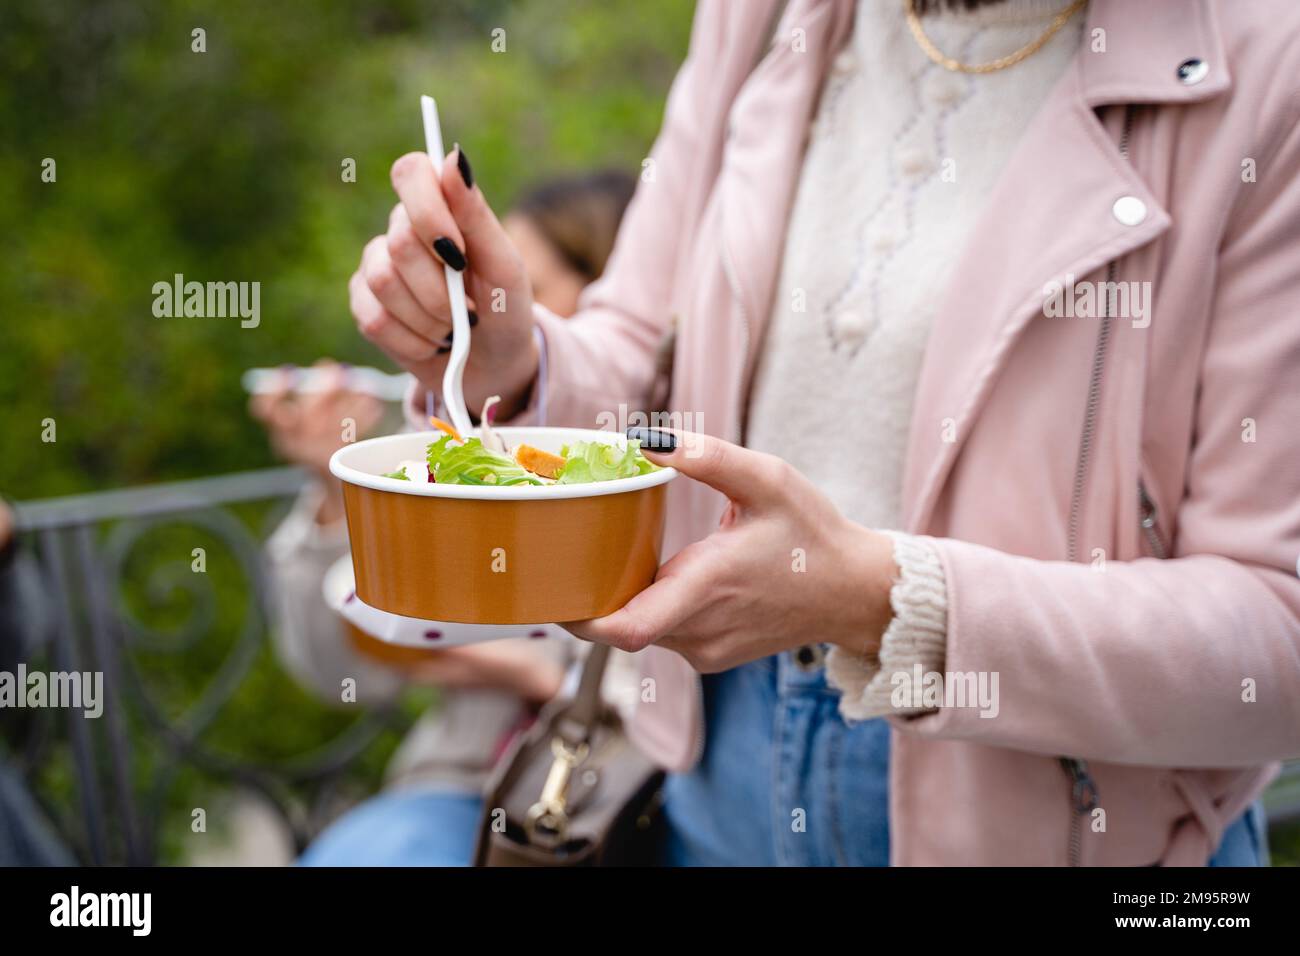 Gros plan sur les mains d'une jeune femme qui apprécie une salade saine dans un bol en papier recyclé. Vêtue d'une veste en cuir rose tendance, elle se tient debout dans une pub Banque D'Images